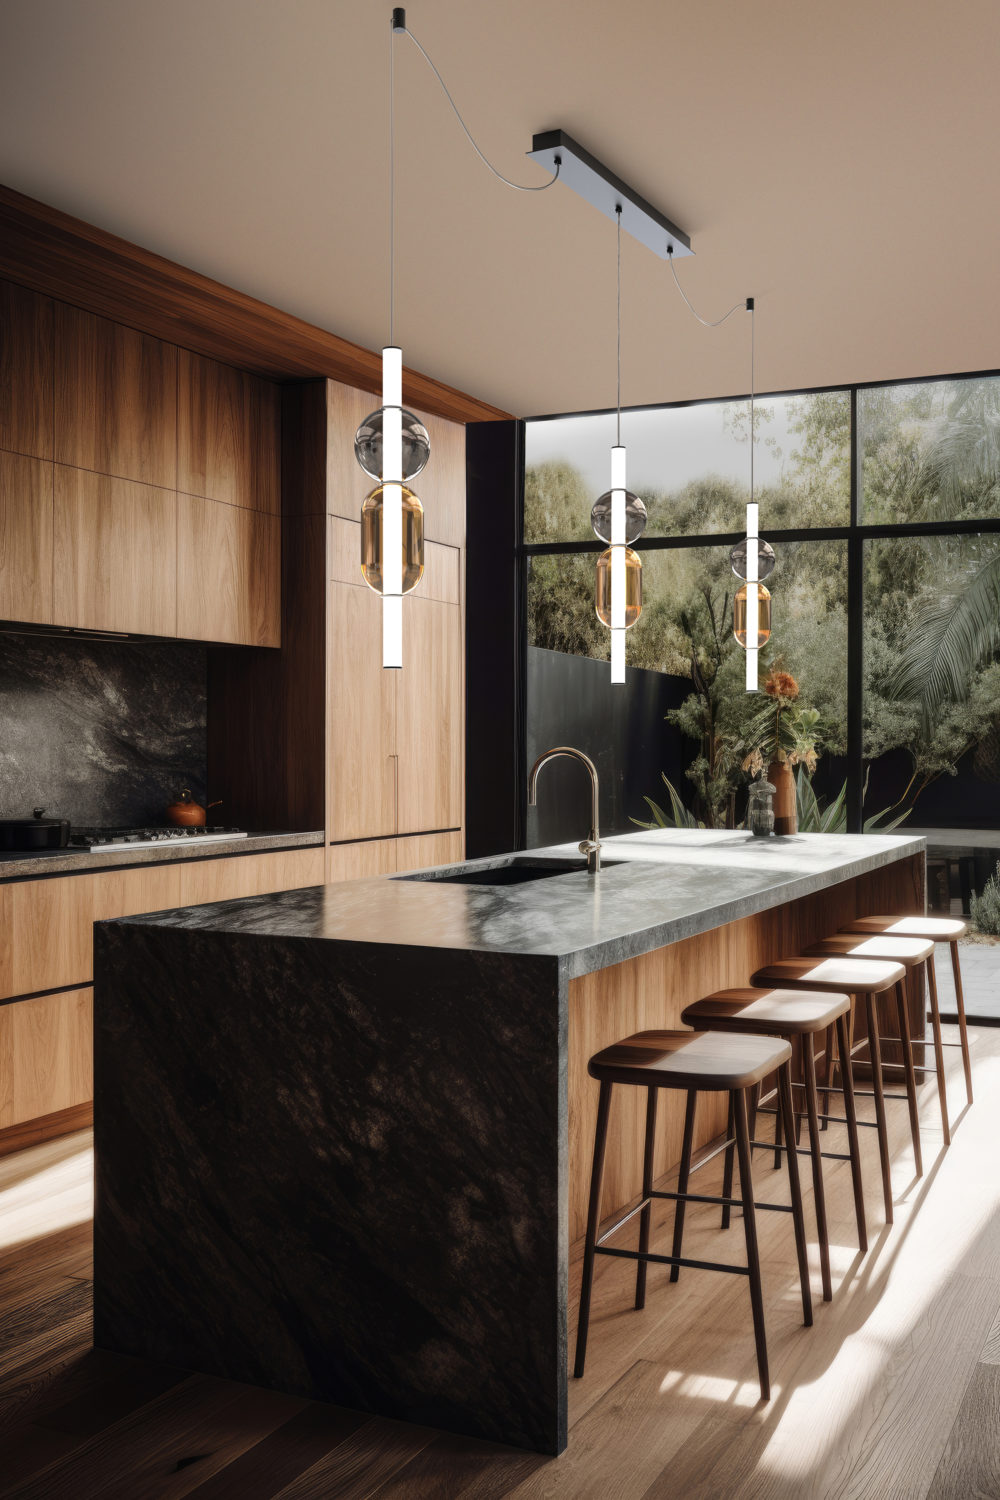 Kitchen interior architecture minimalist style